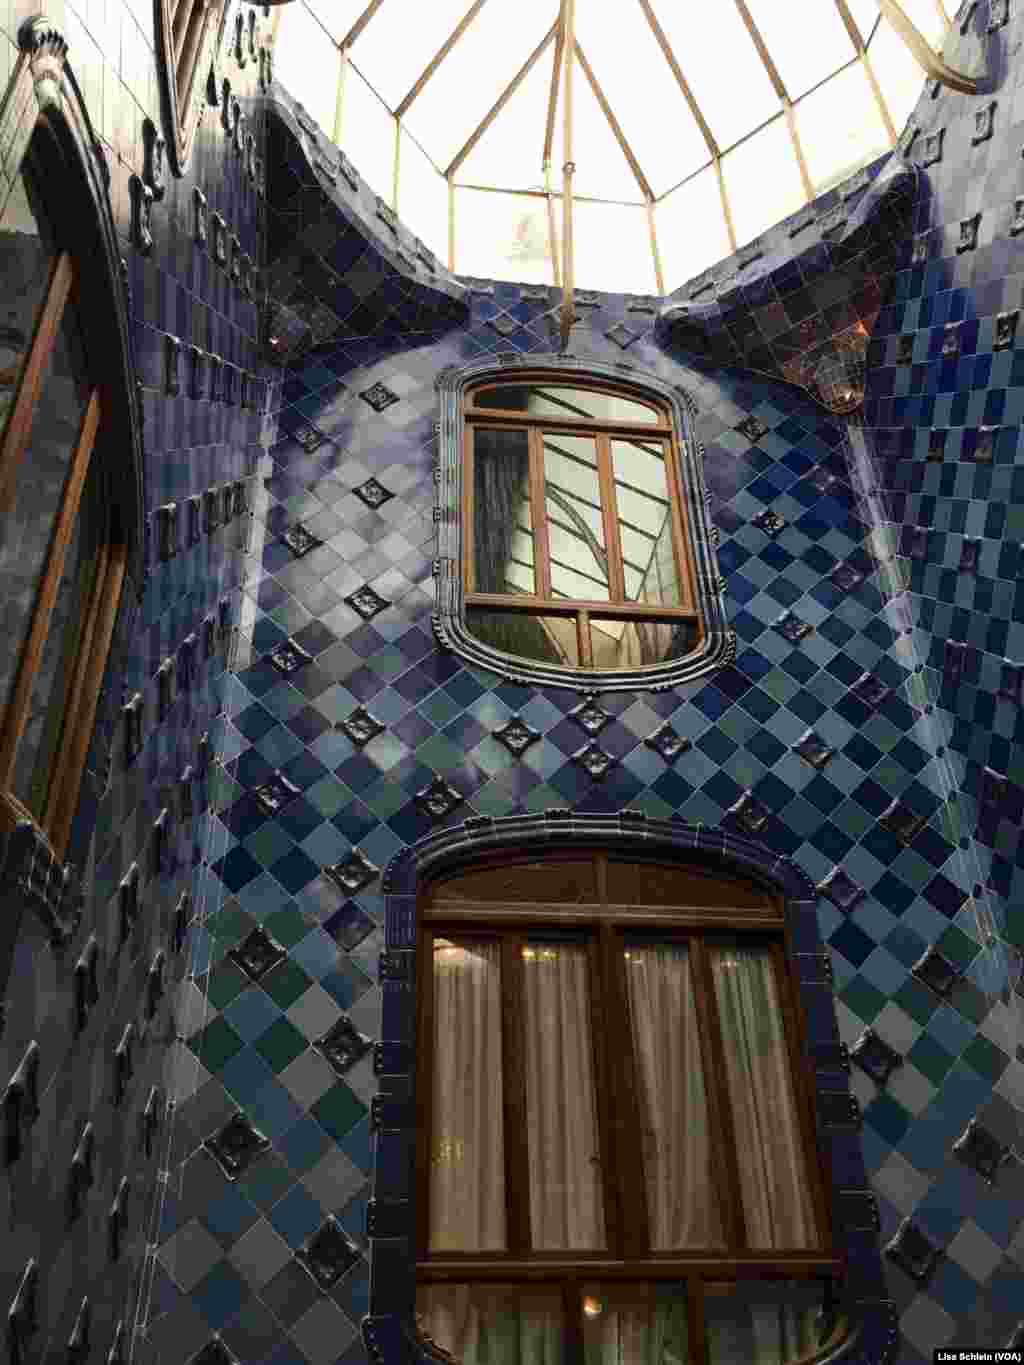 Langit-langit kaca yang besar menyinari ubin biru tua di lantai atas Casa Batllo di Barcelona.